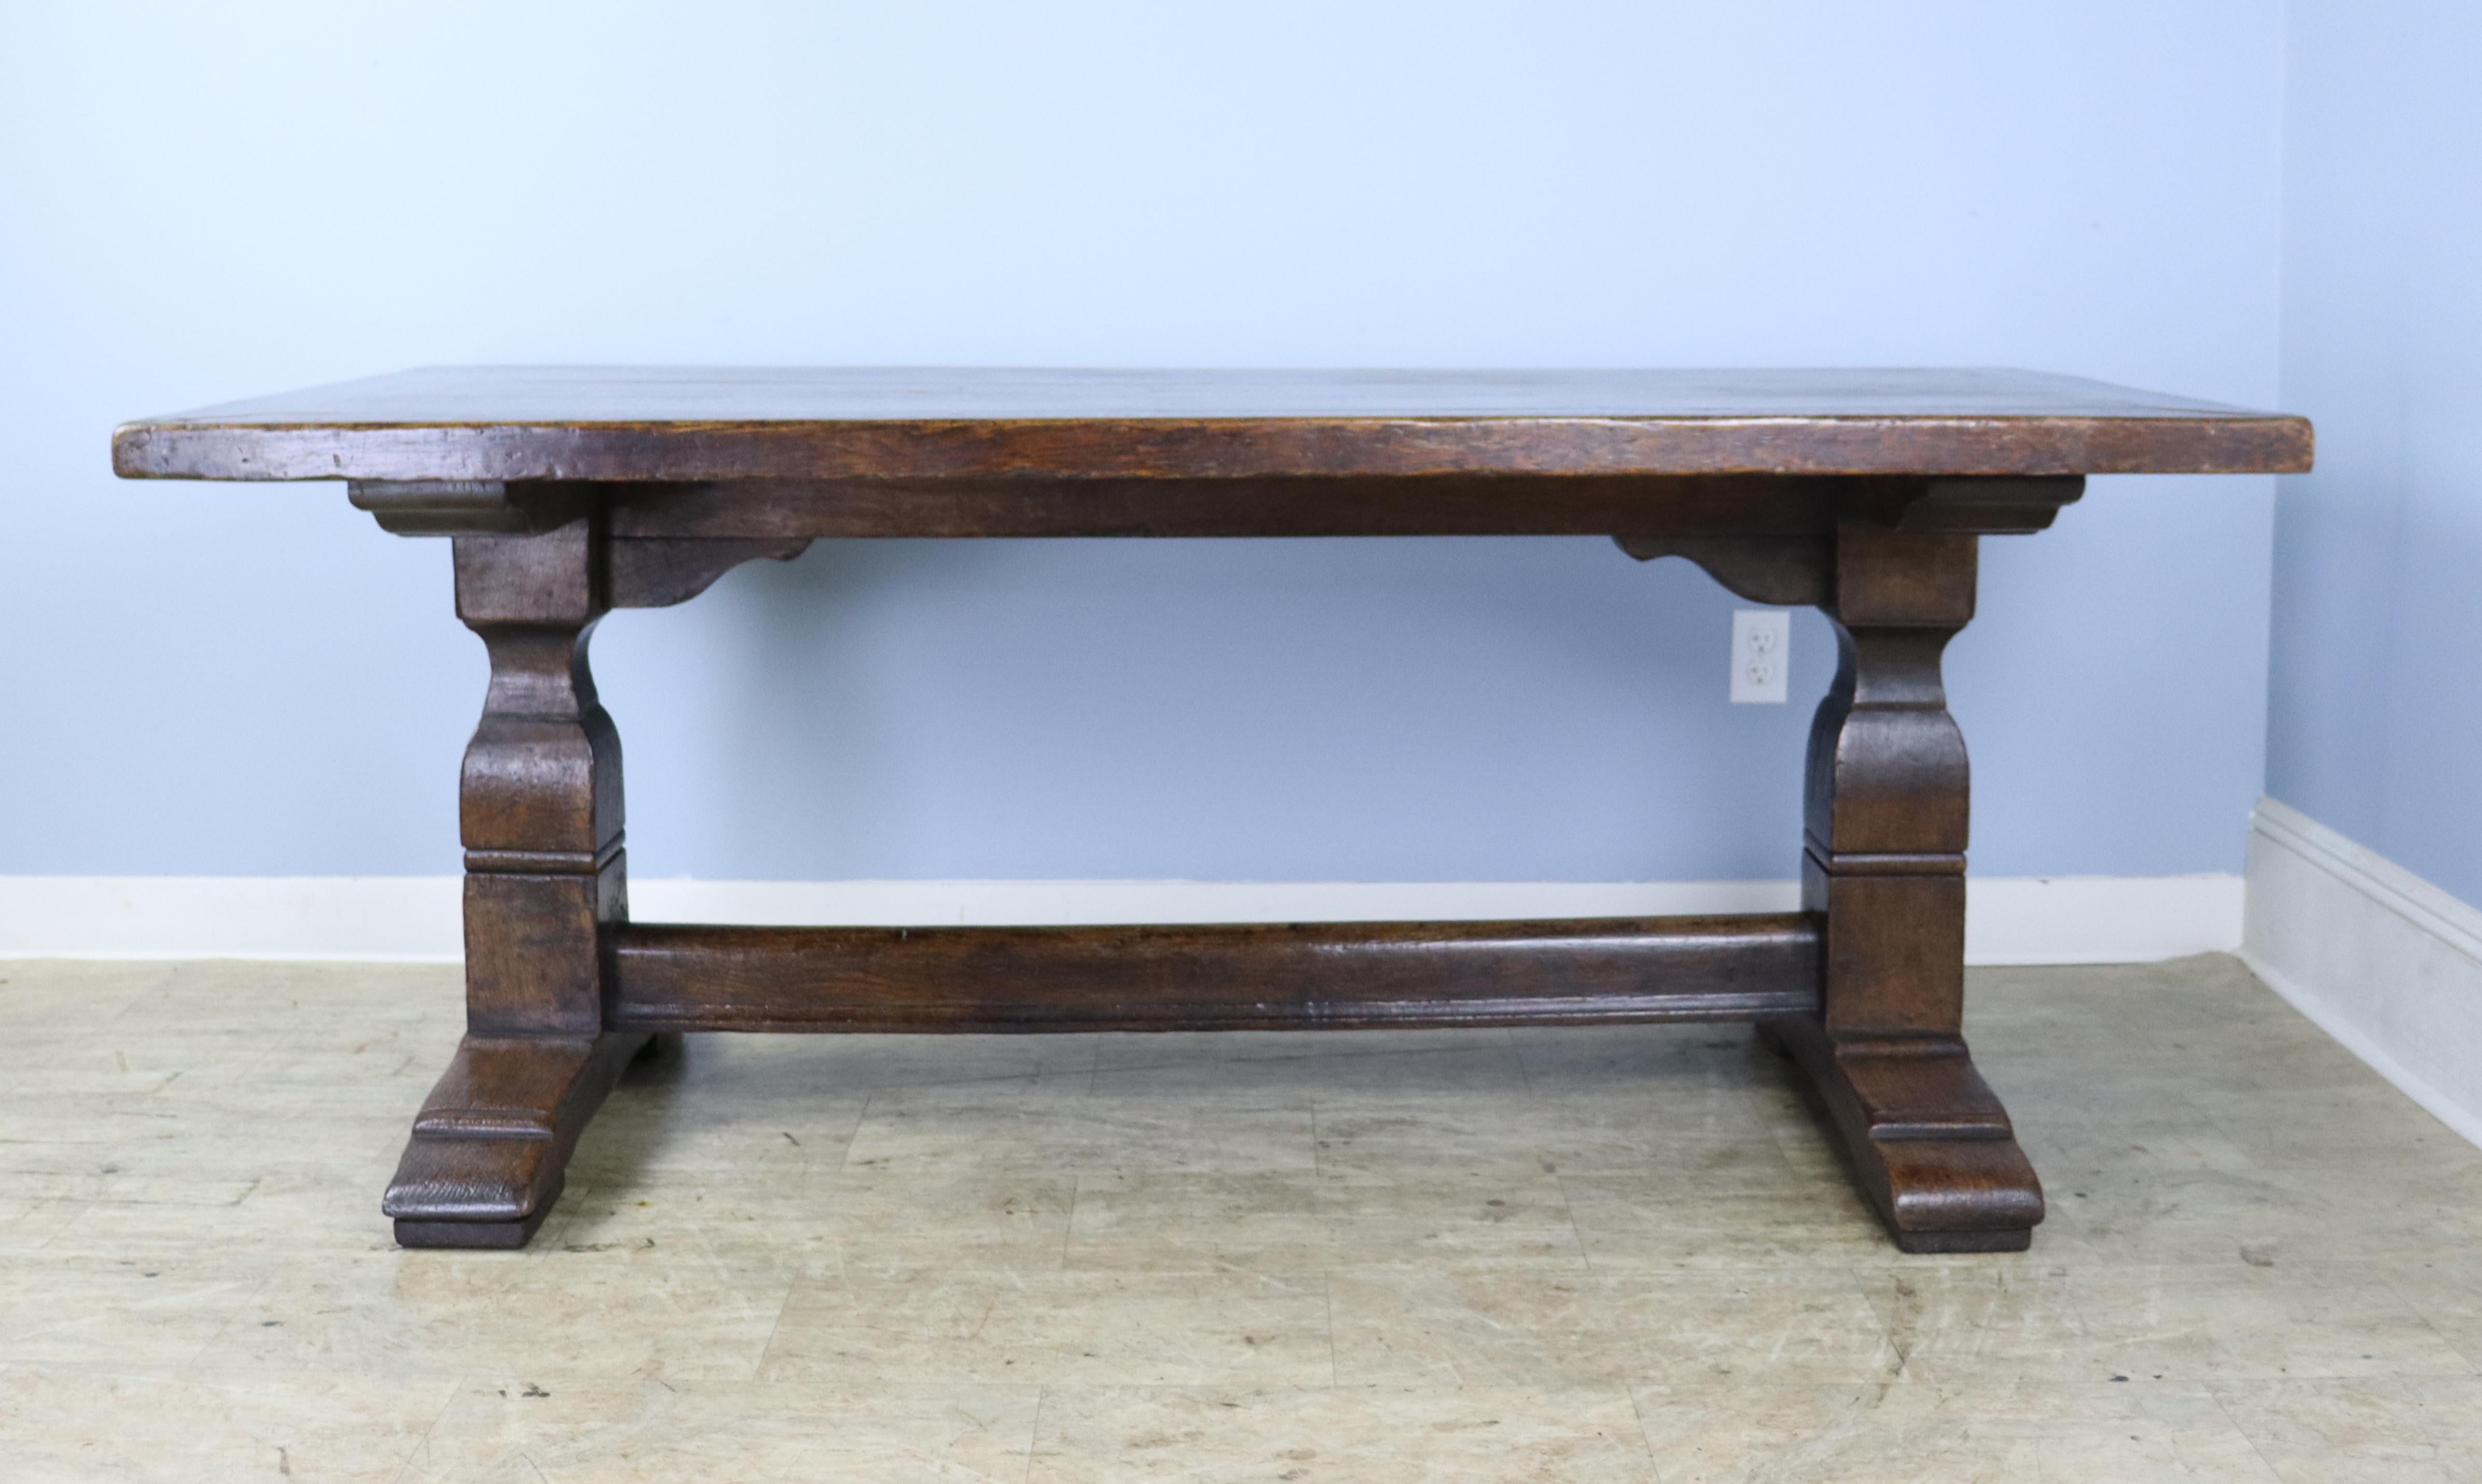 Une grande table à tréteaux en chêne, fabriquée à l'époque victorienne avec du bois encore plus ancien.  Magnifique grain, couleur et patine sur le dessus et bonne base décorative.  Le dessus a une épaisseur de 2